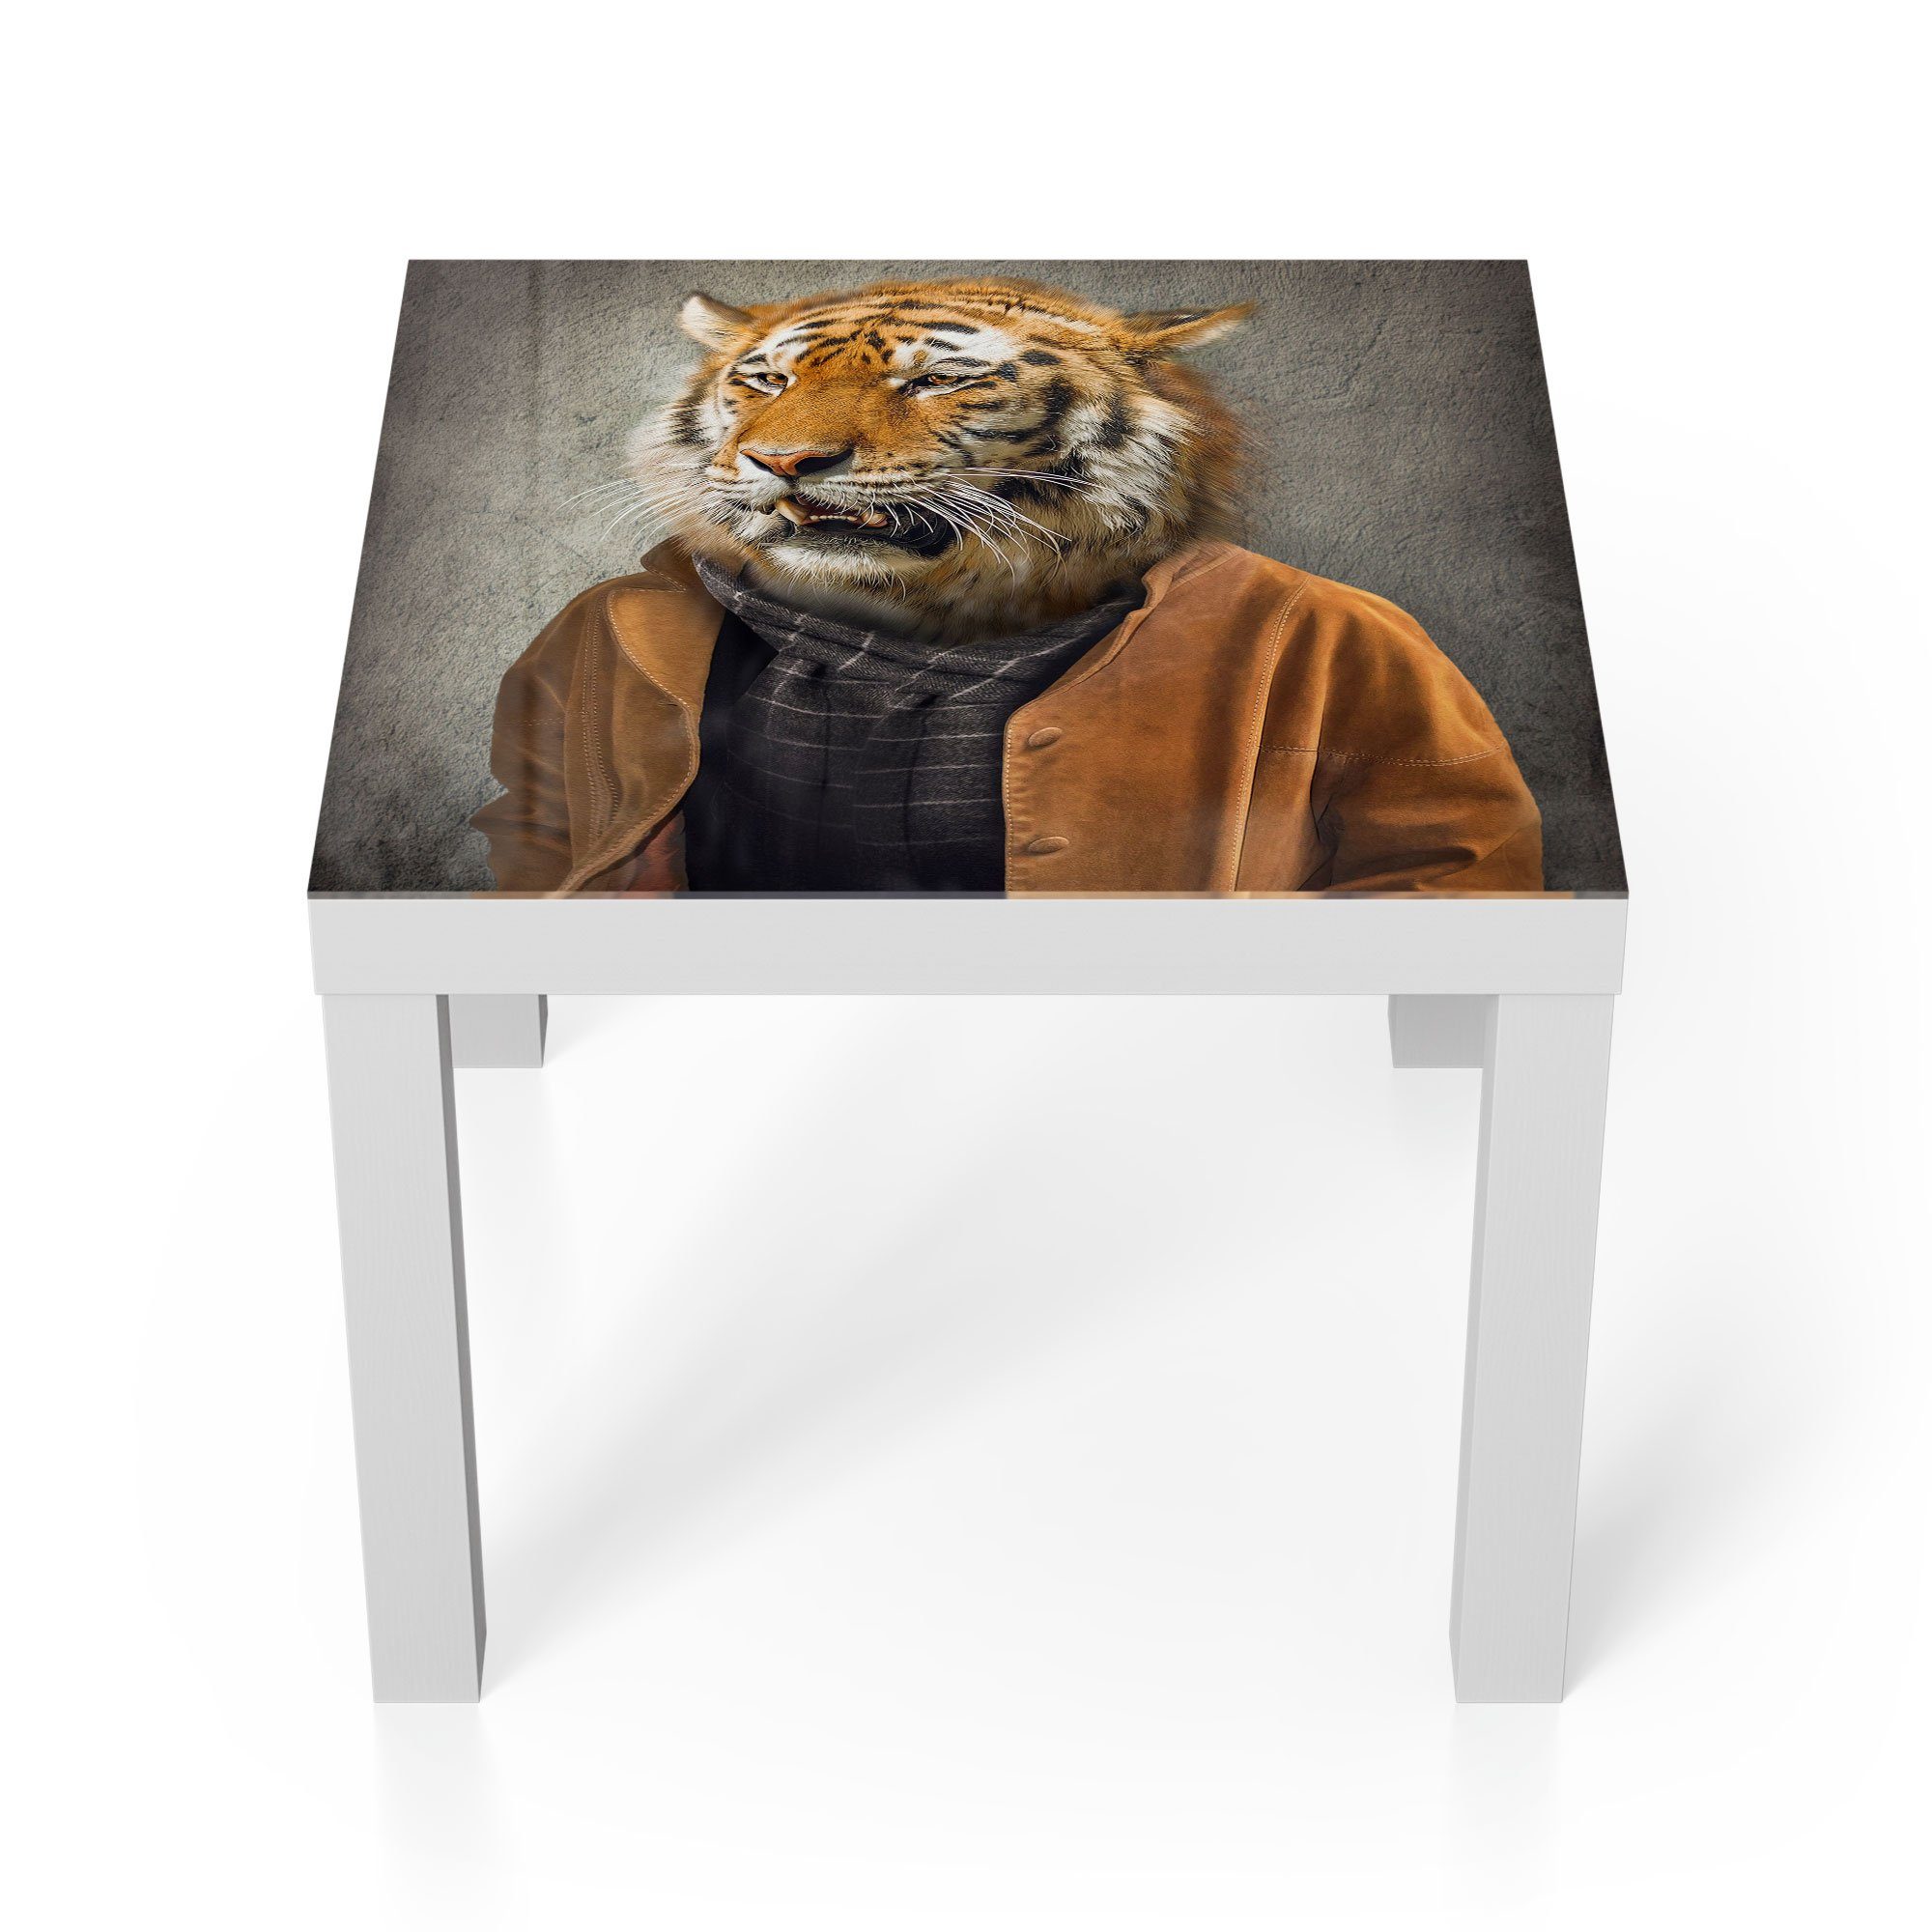 DEQORI Couchtisch 'Tiger in Menschengestalt', Glas Beistelltisch Glastisch modern Weiß